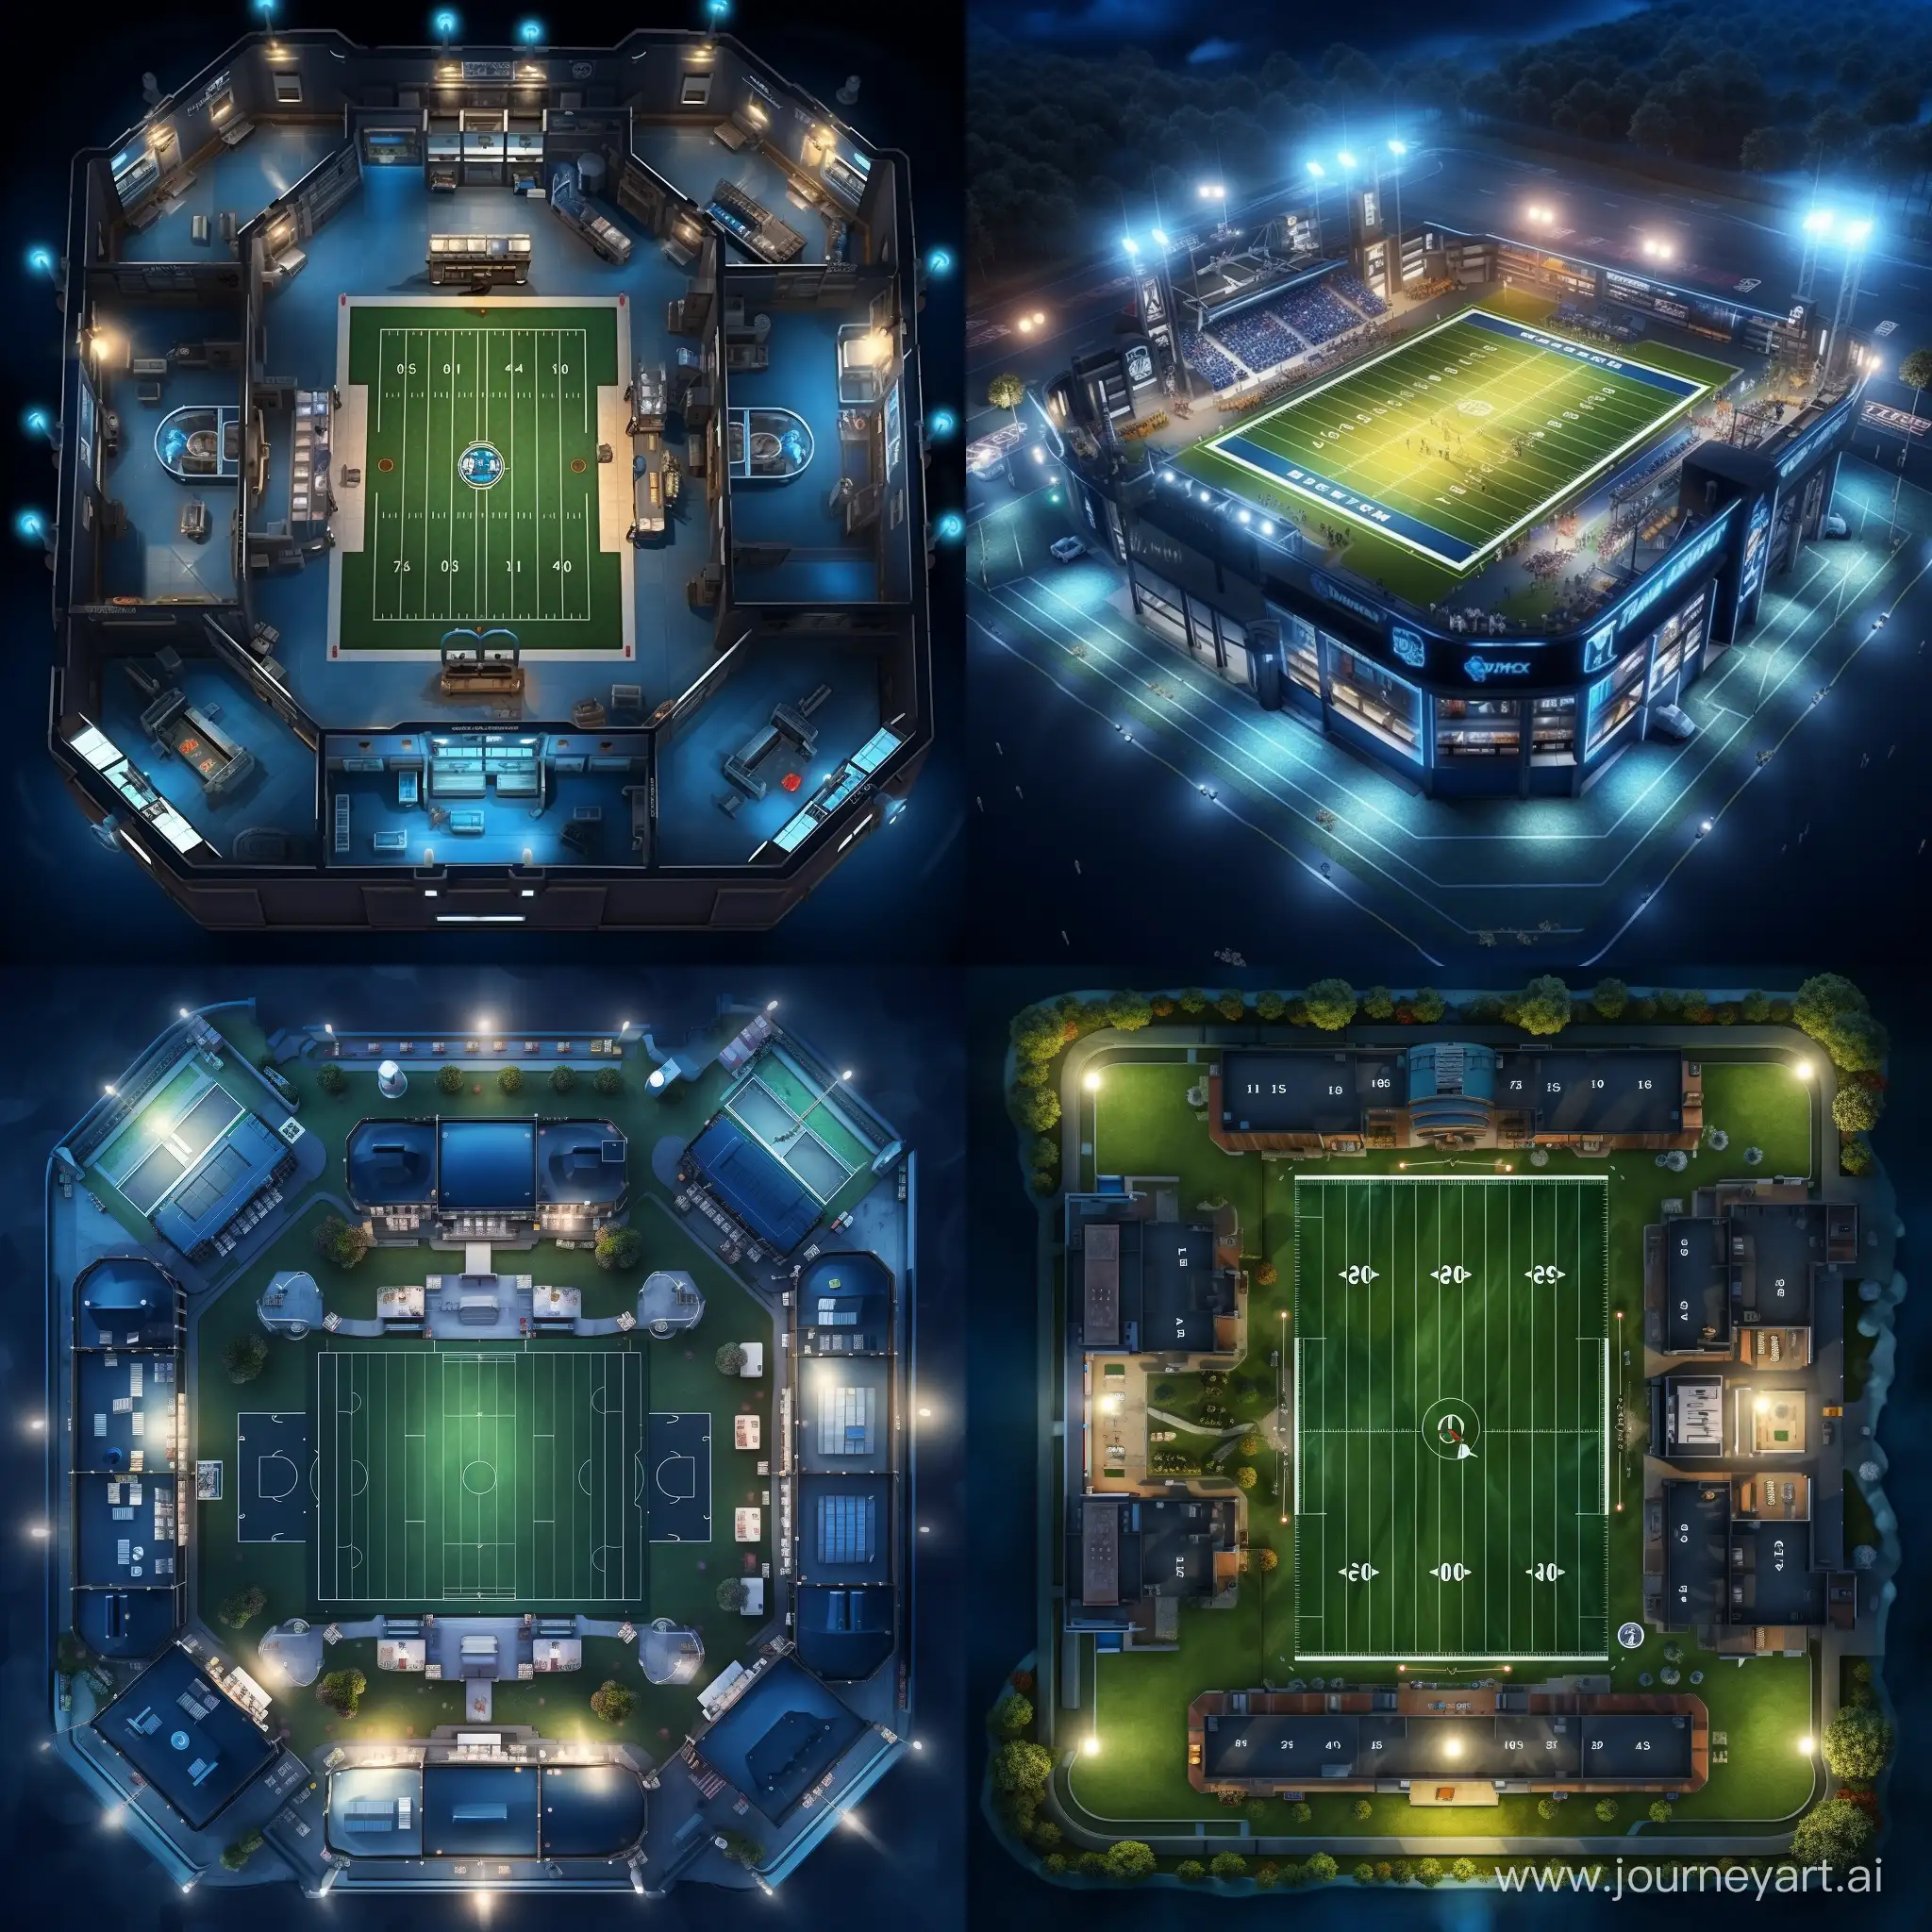 Футбольный комплекс с полем, раздевалками и освещением вид сверху. Картинка в стиле реализма, максимальное качество
